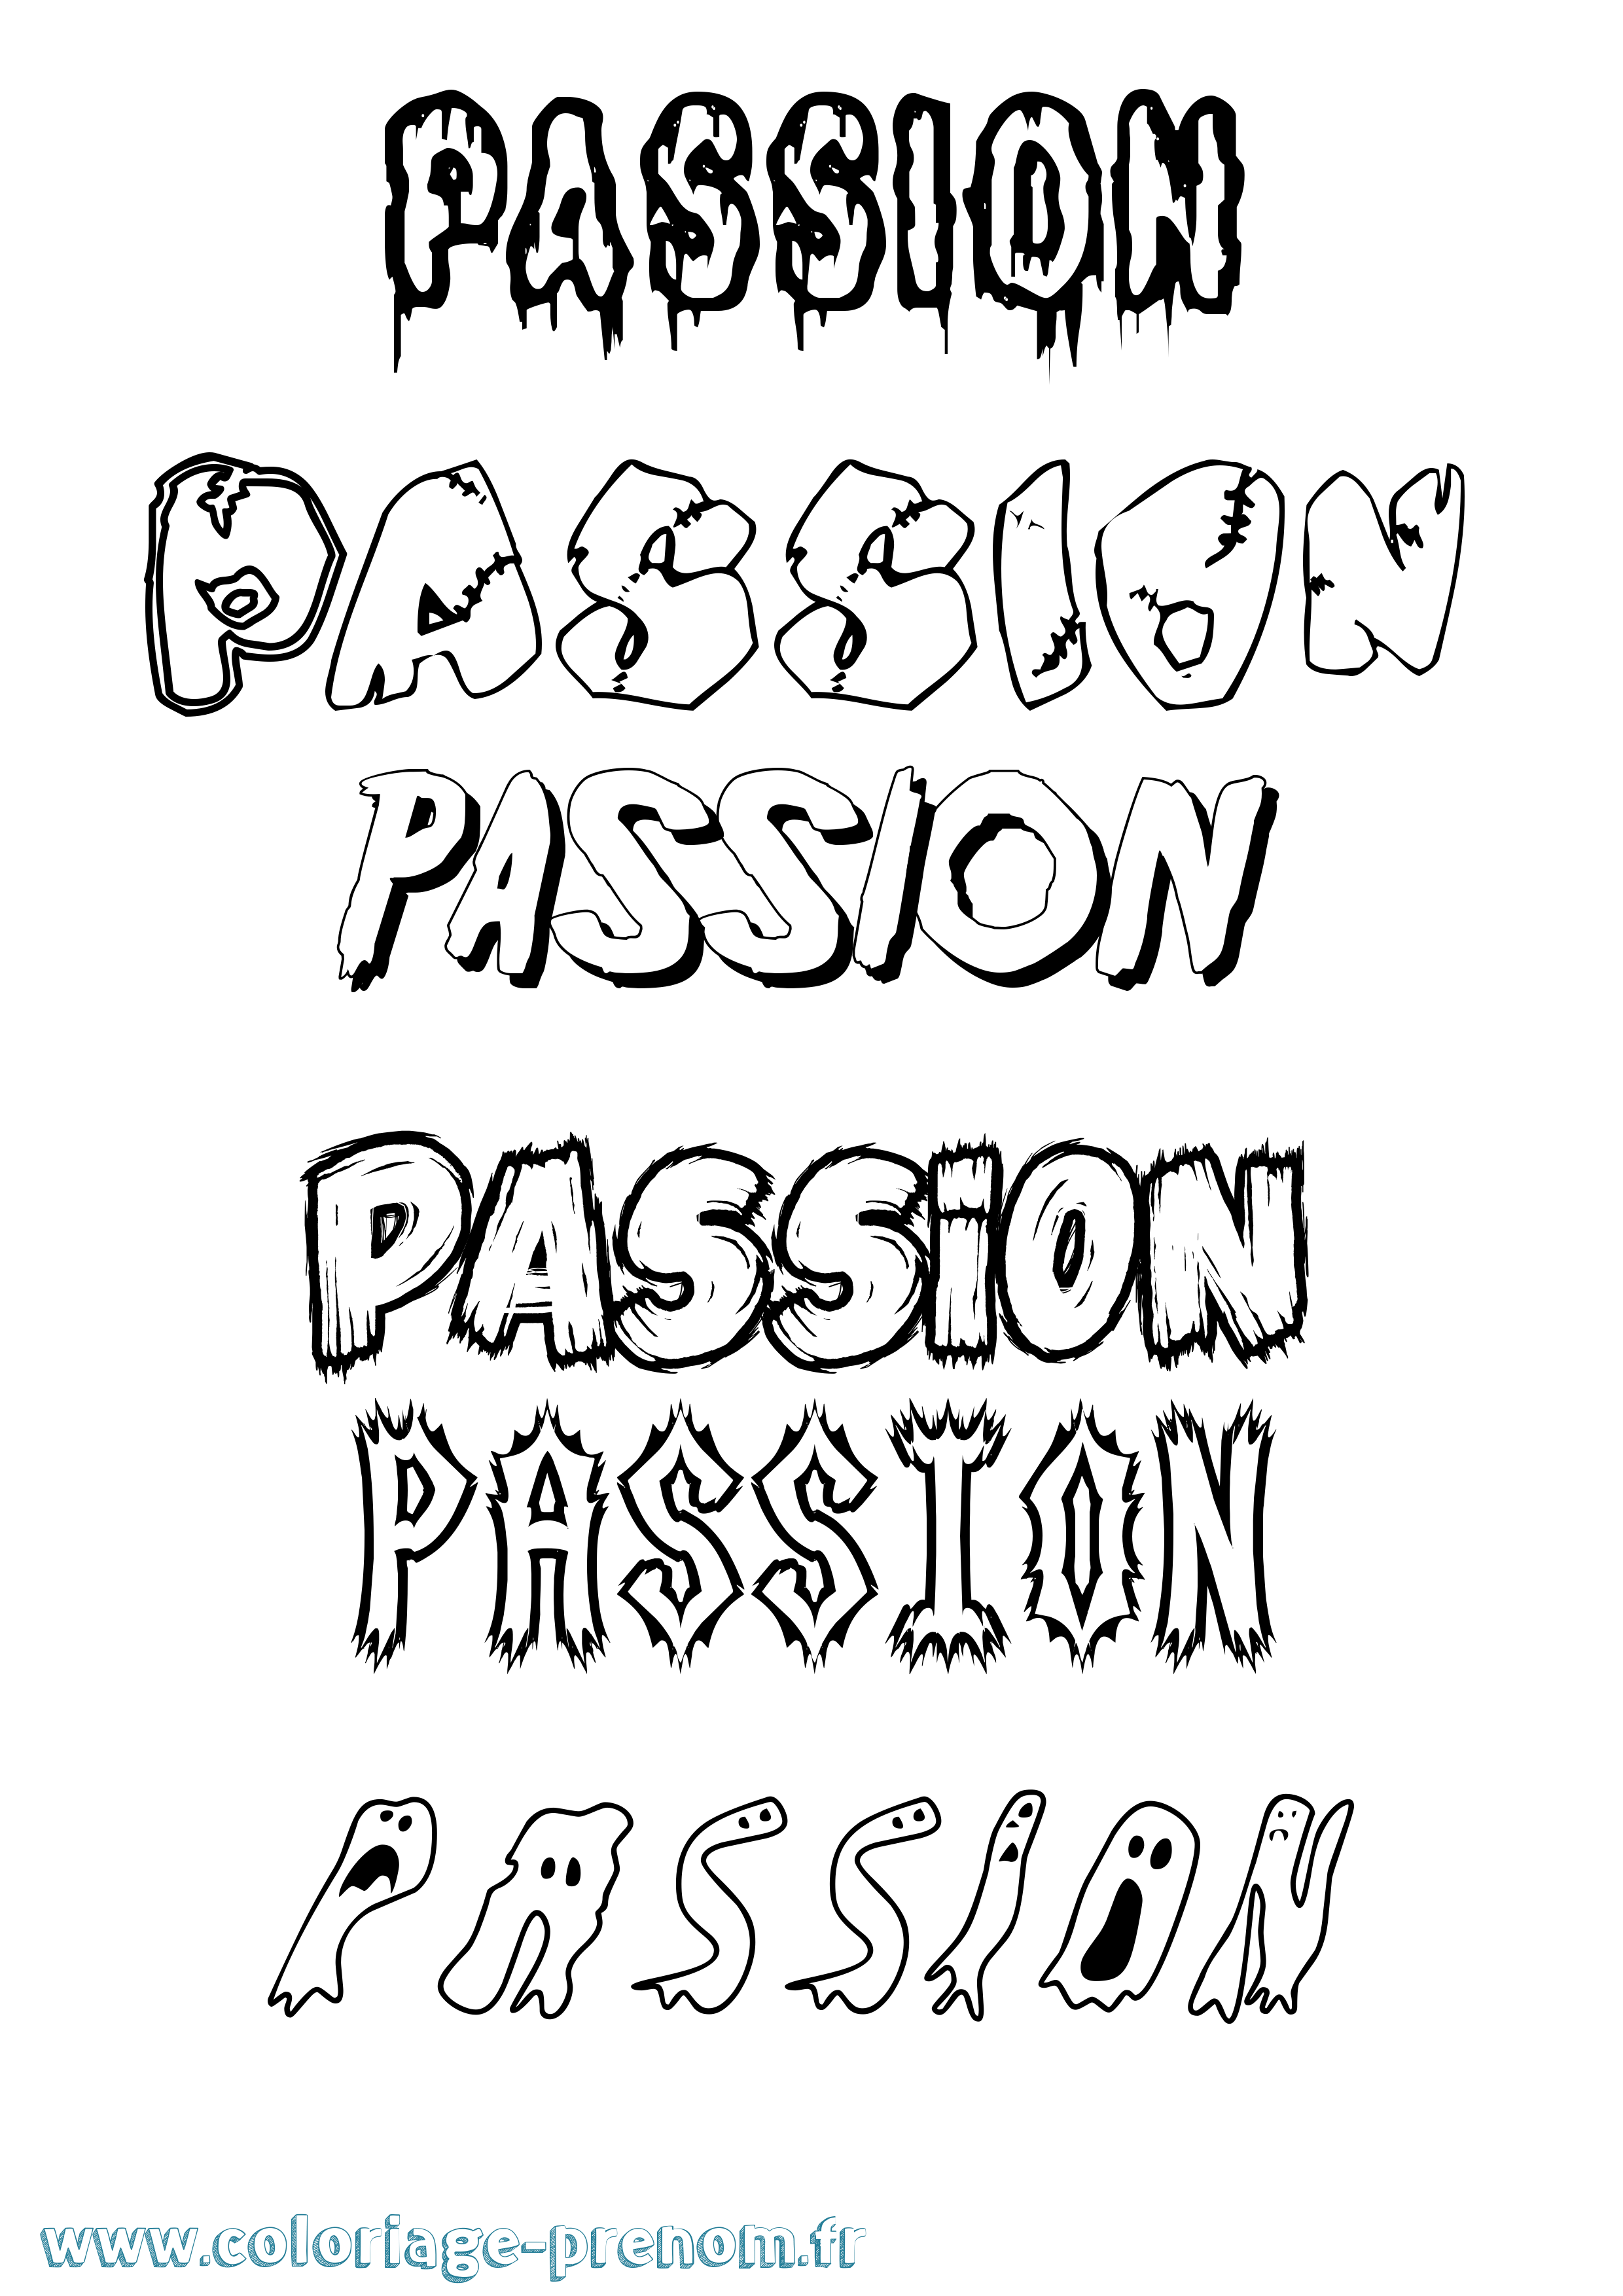 Coloriage prénom Passion Frisson